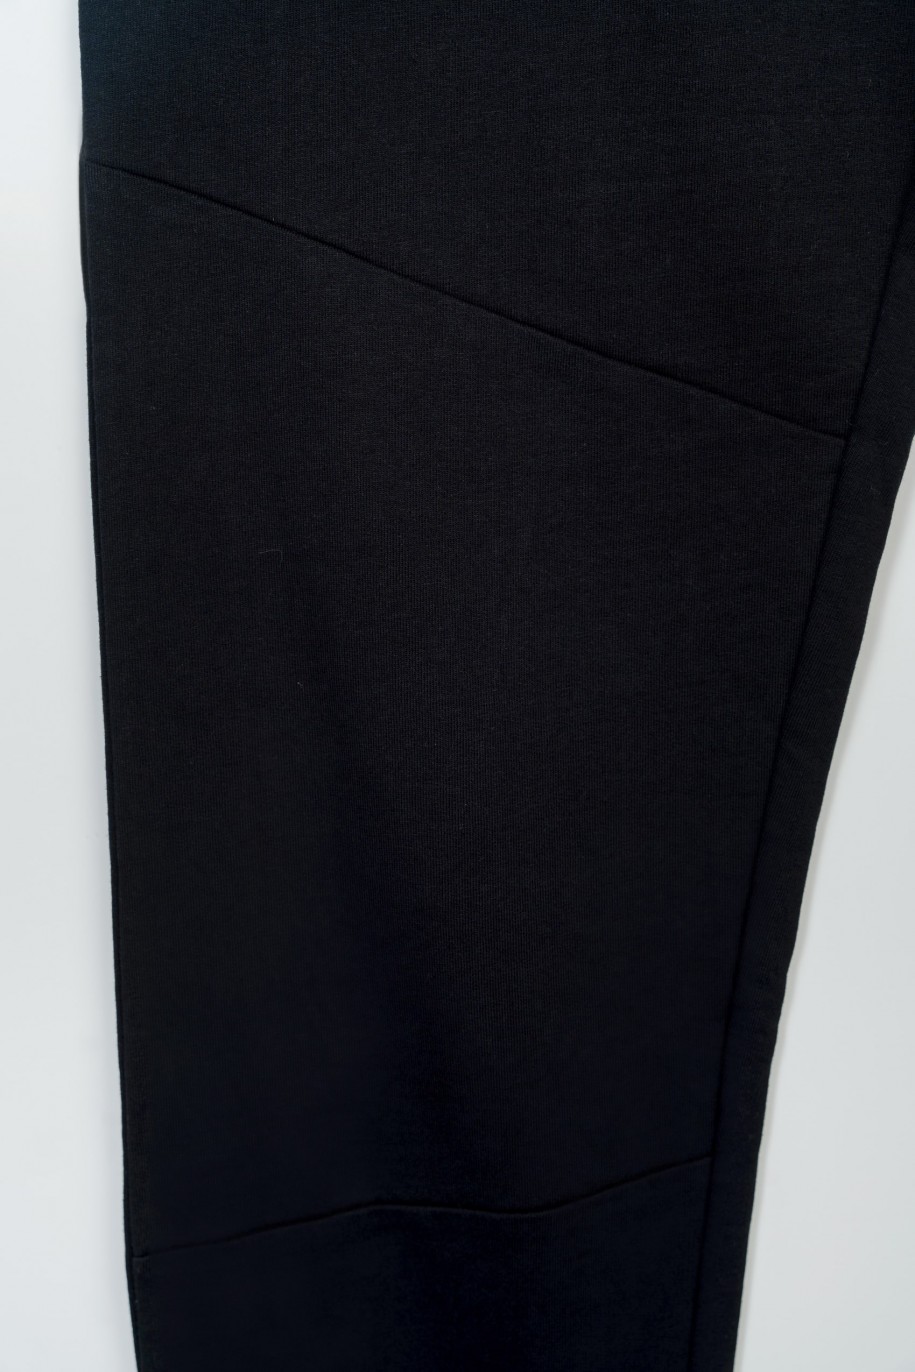 Czarne spodnie dresowe z modnymi cięciami na nogawkach - 47262